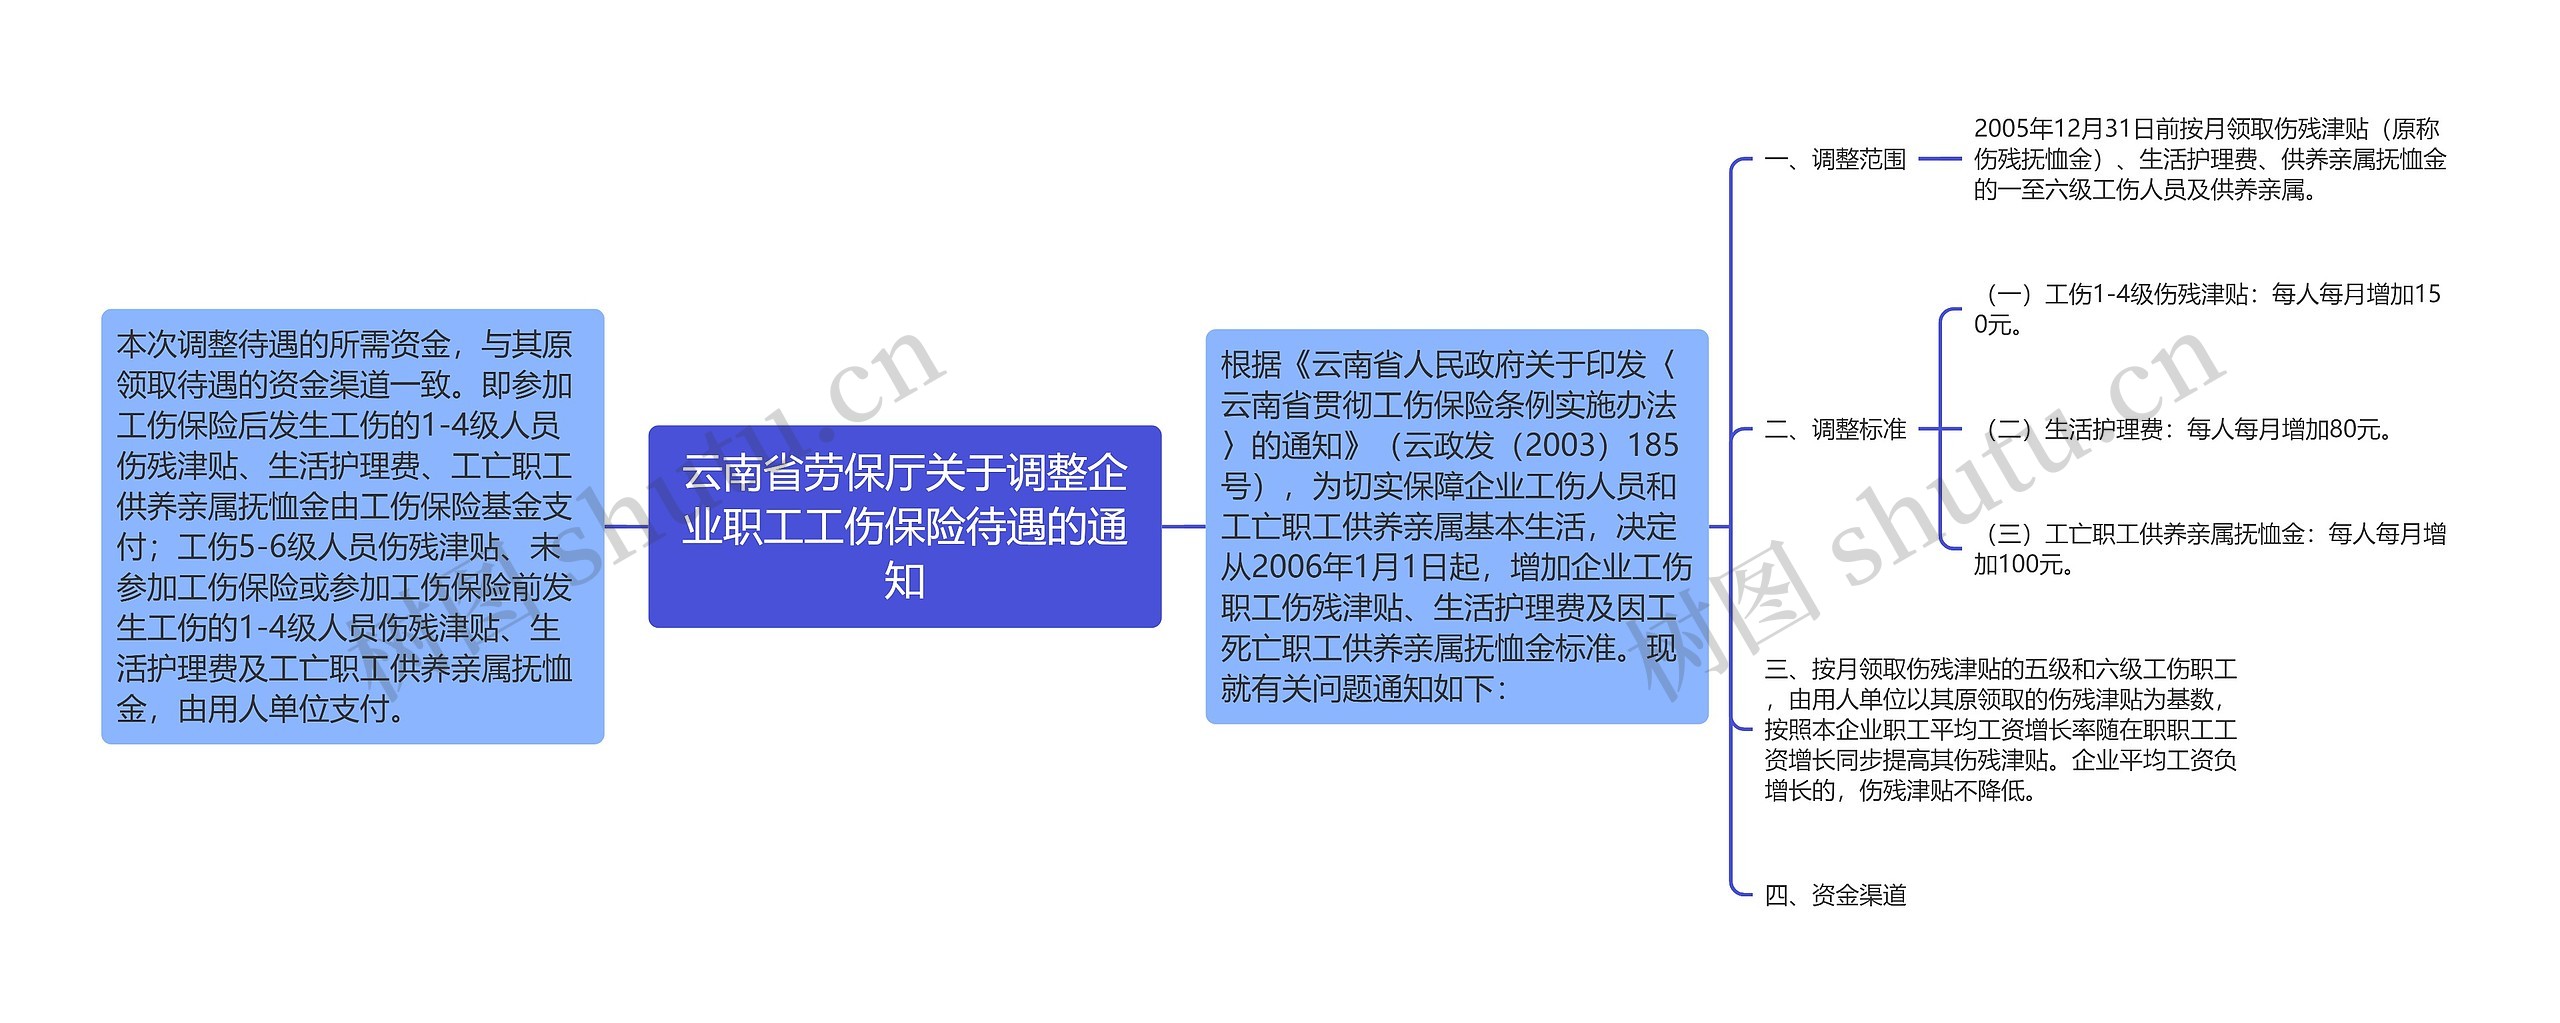 云南省劳保厅关于调整企业职工工伤保险待遇的通知